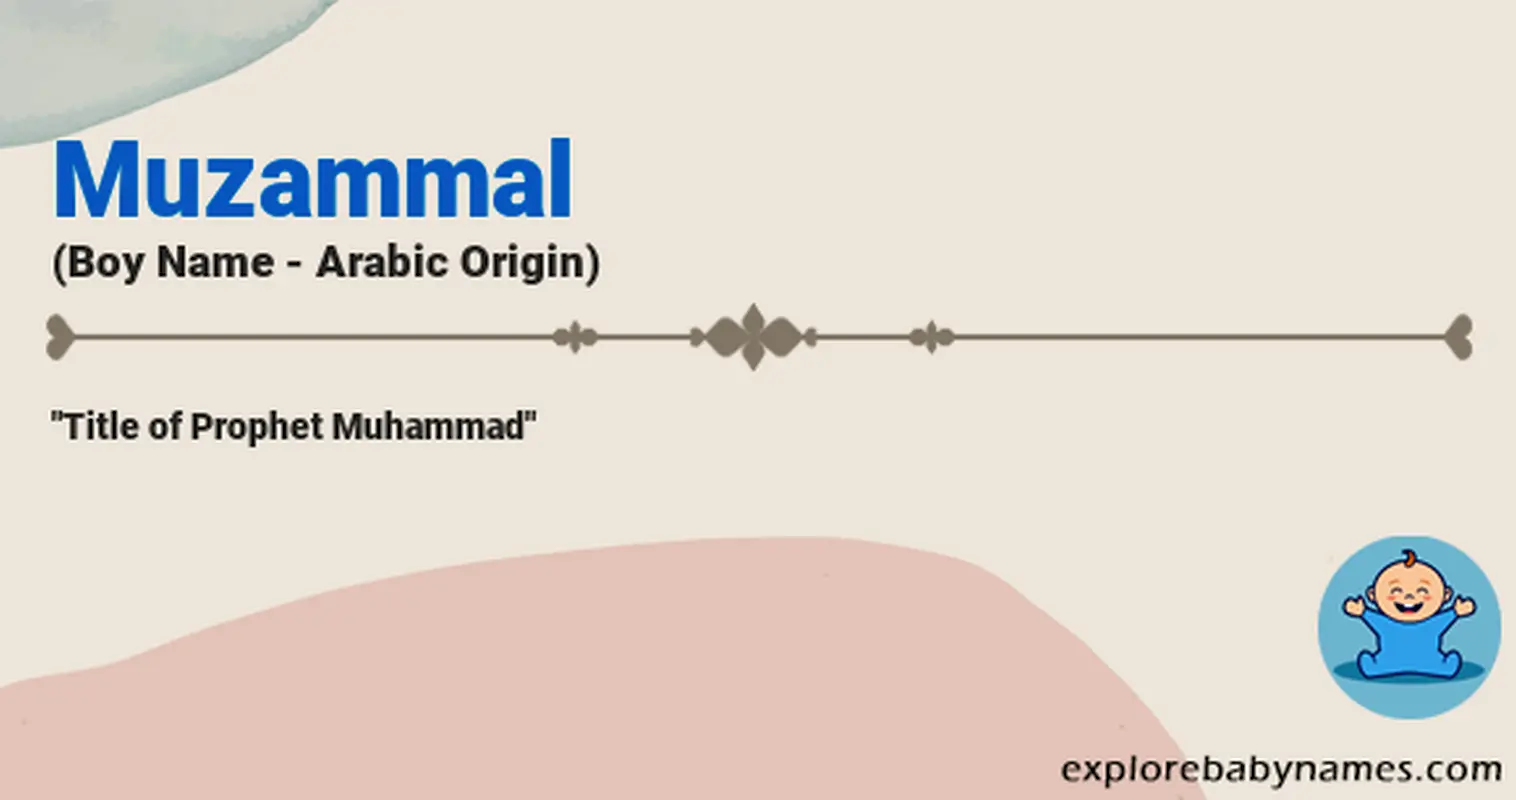 Meaning of Muzammal